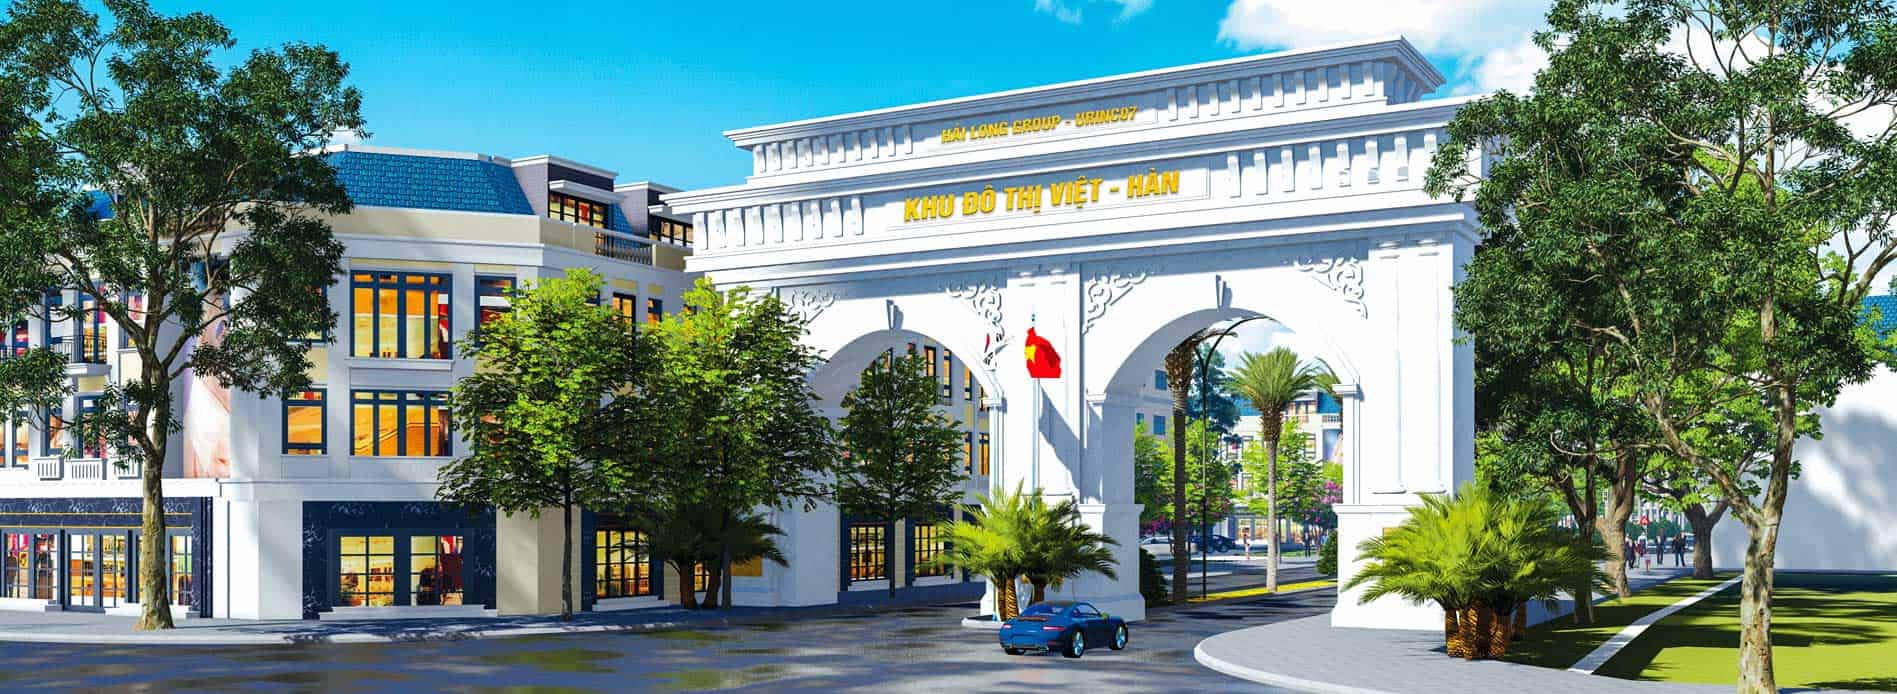 Khu đô thị Việt Hàn, dự án có quy mô lớn và hiện đại nhất Phổ Yên